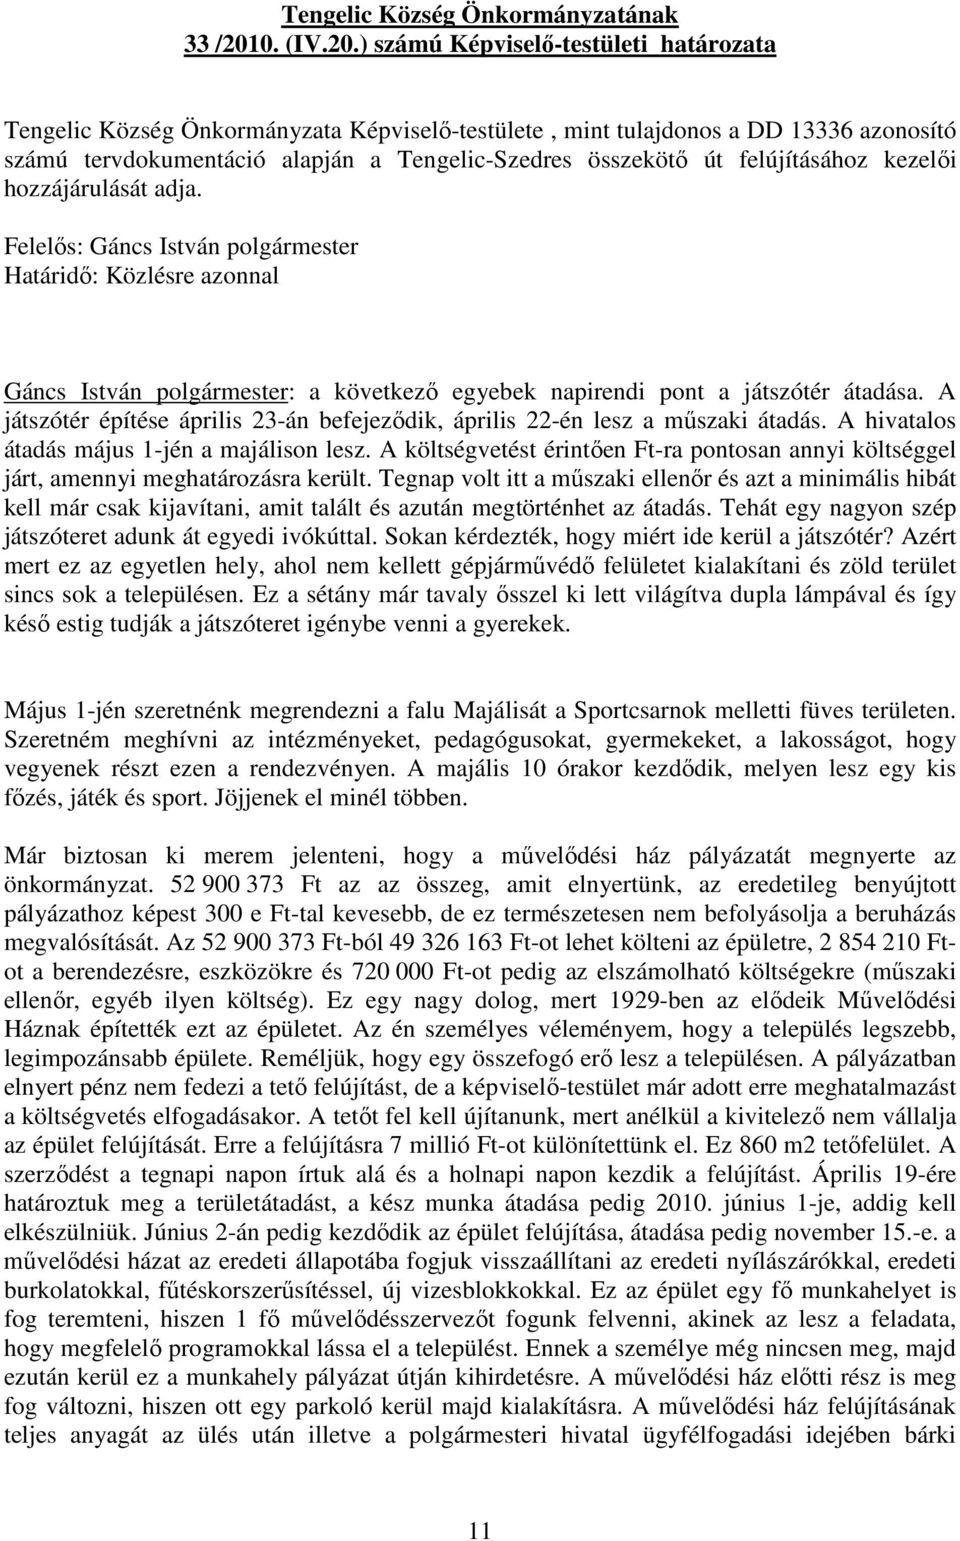 ) számú Képviselı-testületi határozata Tengelic Község Önkormányzata Képviselı-testülete, mint tulajdonos a DD 13336 azonosító számú tervdokumentáció alapján a Tengelic-Szedres összekötı út